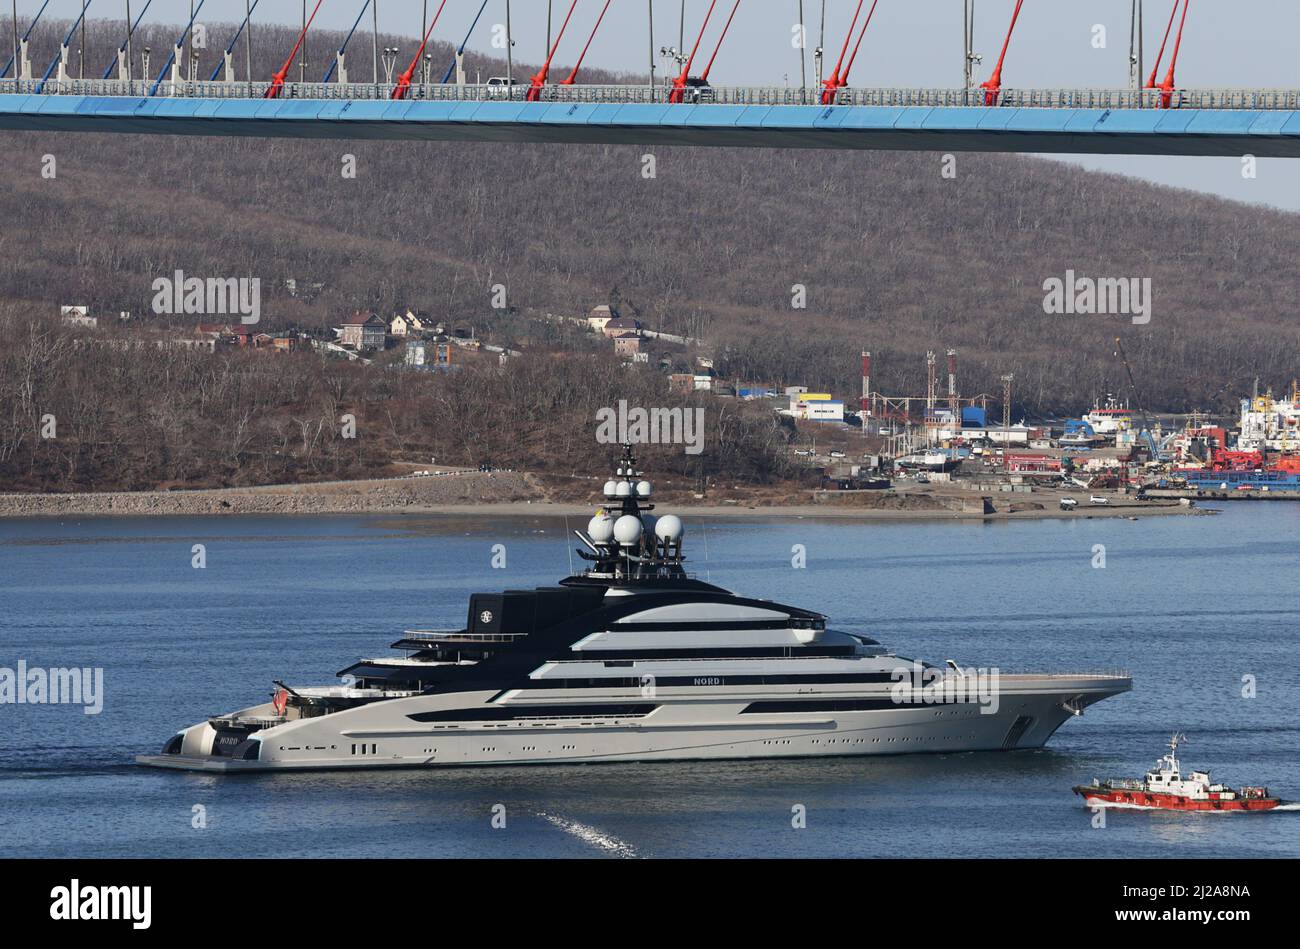 Le superyacht Nord, qui serait détenu par l'oligarque russe sanctionné Alexei Mordashov, arrive dans le port extrême-Orient de Vladivostok, Russie le 31 mars 2022. PHOTOGRAPHE REUTERS/REUTERS Banque D'Images